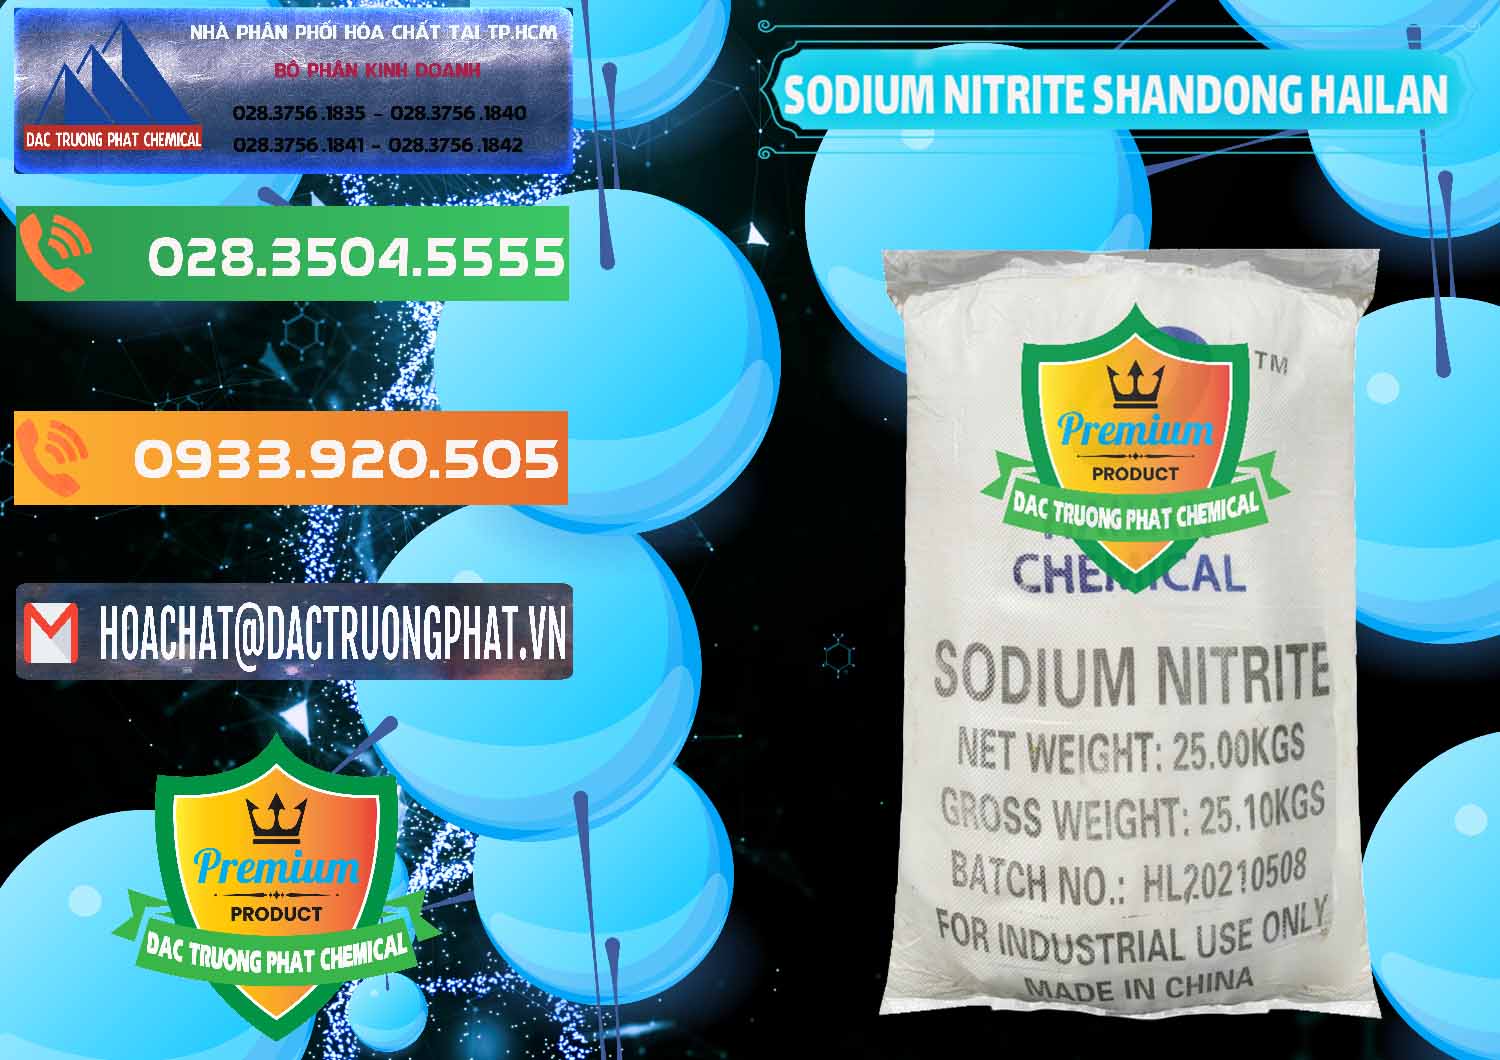 Nơi bán - cung ứng Sodium Nitrite - NANO2 99.3% Shandong Hailan Trung Quốc China - 0284 - Cty bán & phân phối hóa chất tại TP.HCM - hoachatxulynuoc.com.vn